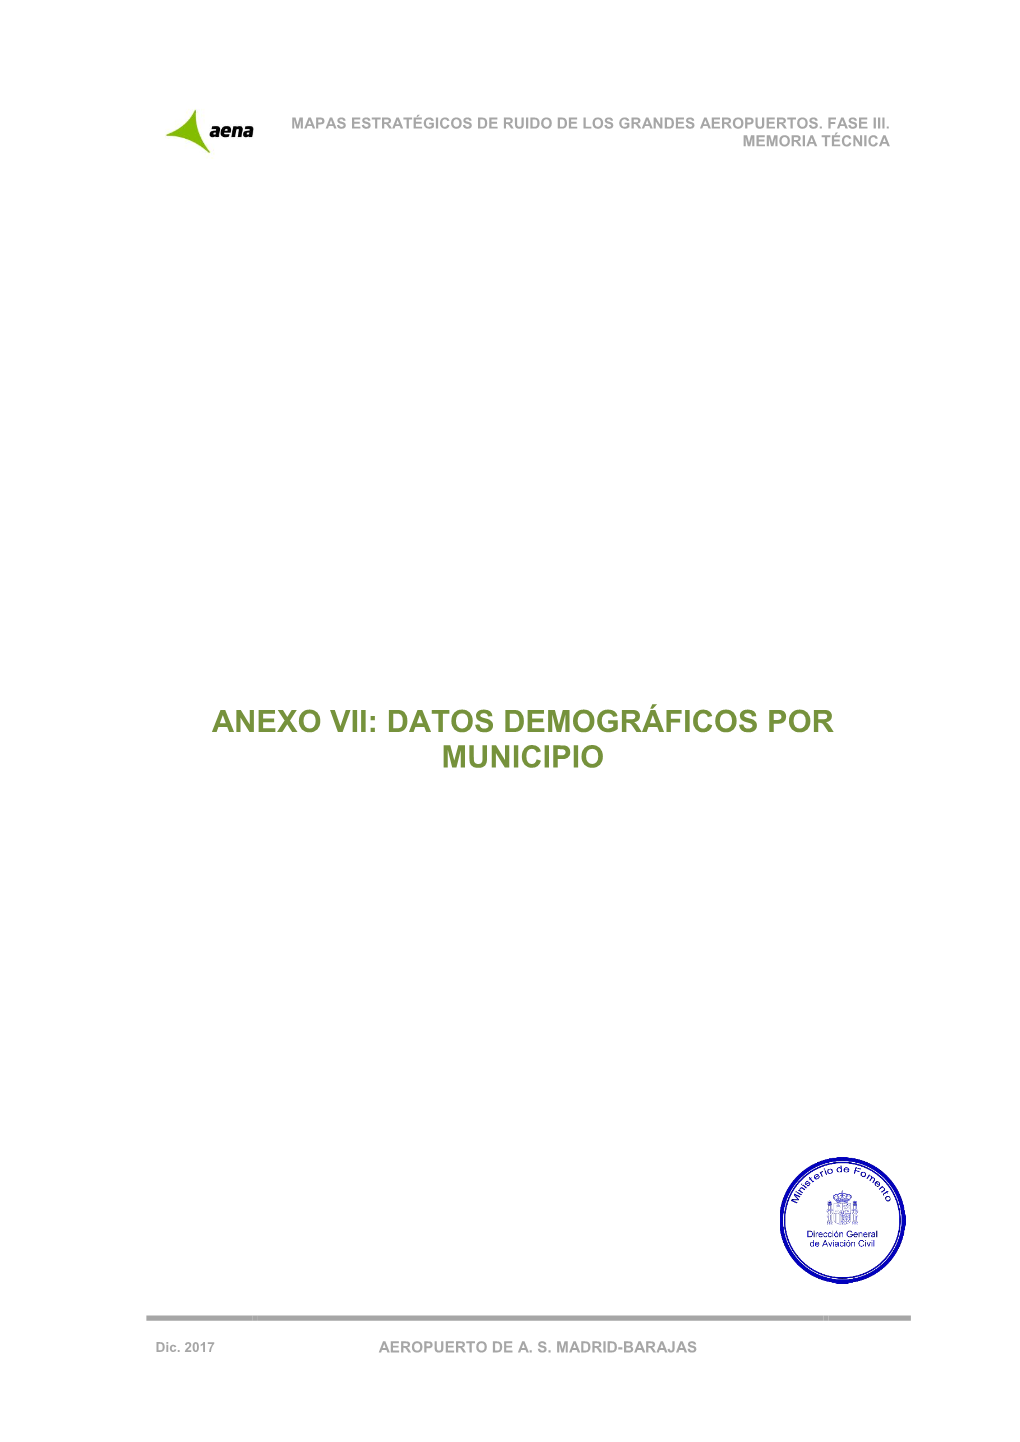 Anexo Vii: Datos Demográficos Por Municipio